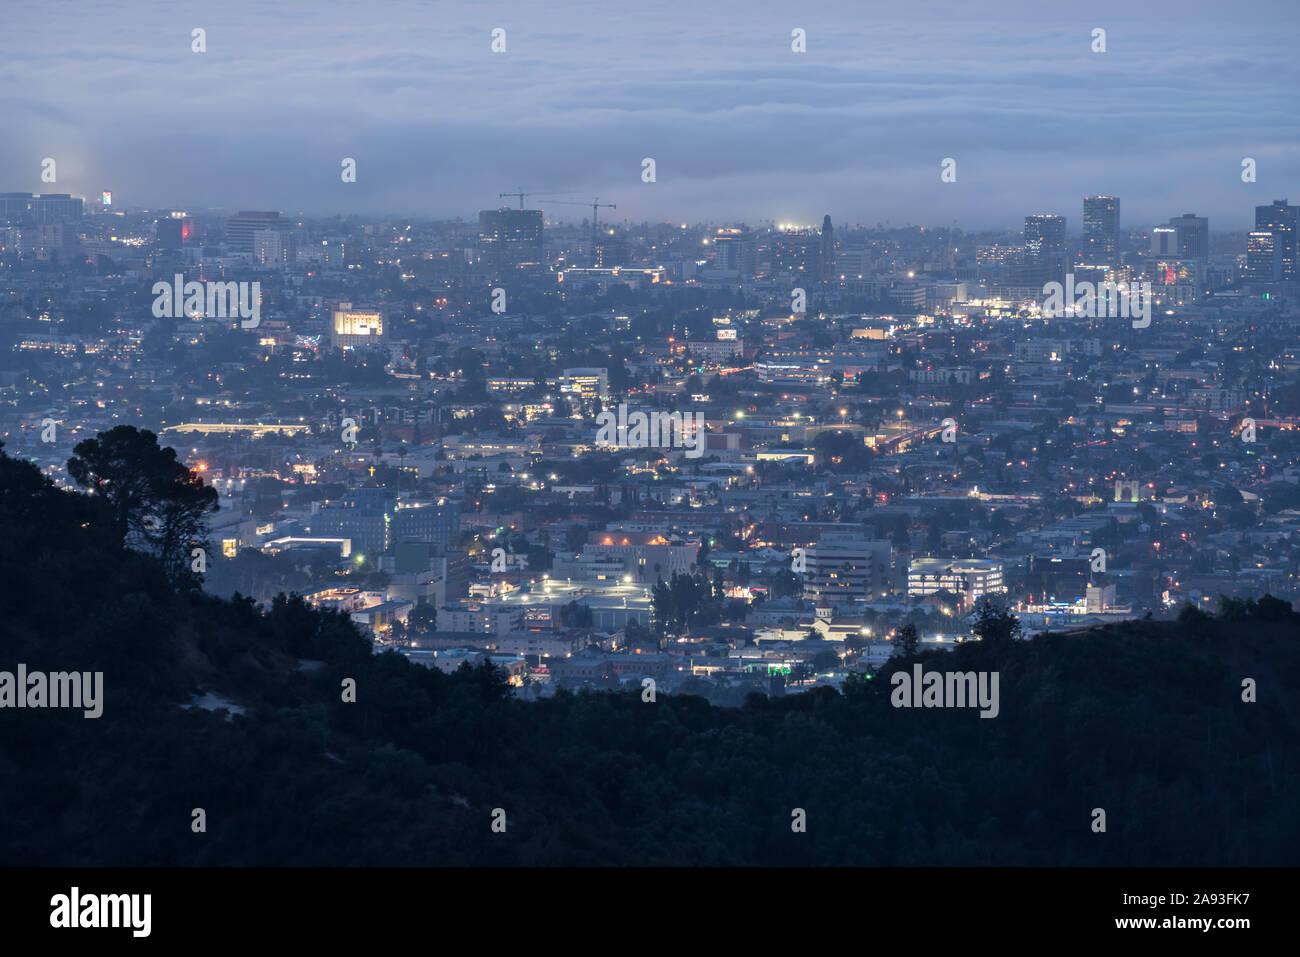 Los Angeles, Kalifornien, USA - 10. November 2019: Predawn neblige Dämmerung Blick auf den Osten Hollywood und Koreatown Bereiche in der Nähe von Downtown Los Angeles. Stockfoto